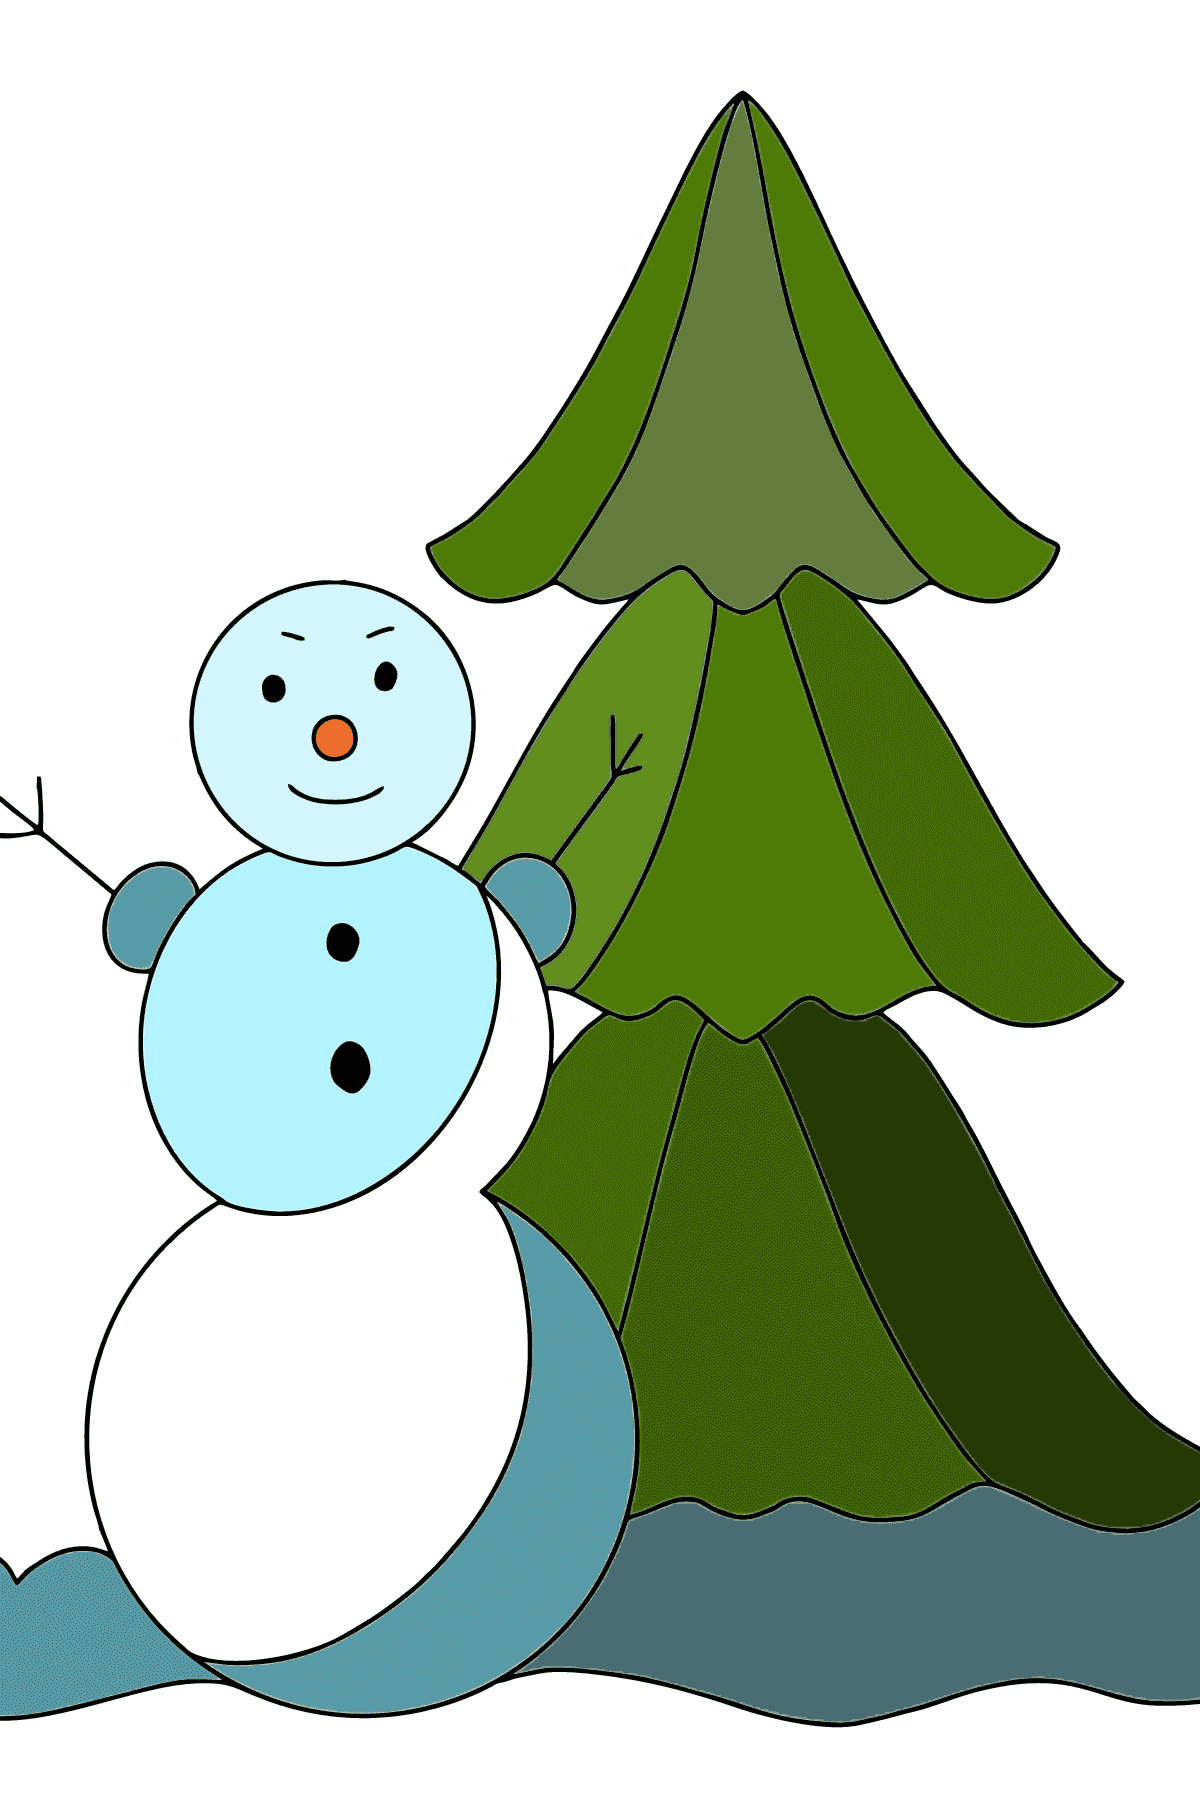 Tegning til farvning snemand og træ (vanskeligt) - Tegninger til farvelægning for børn